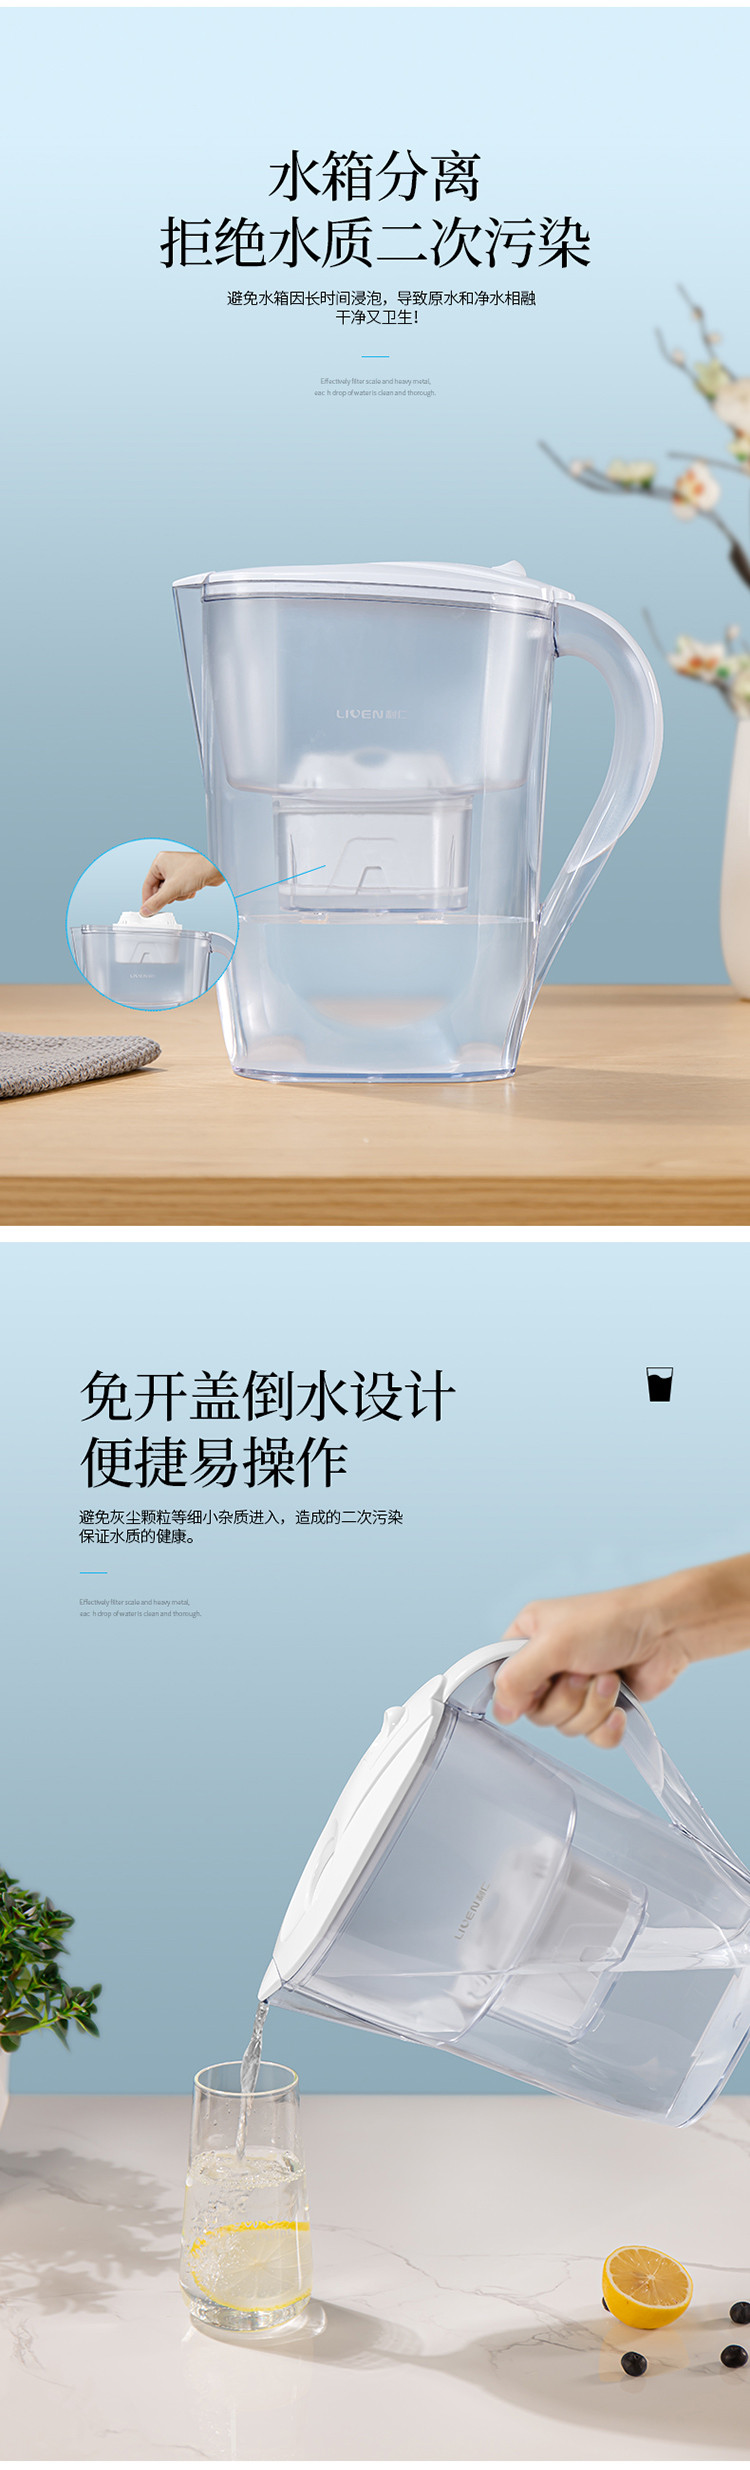 利仁/Liven 净水器家用过滤净水壶厨房自来水过滤器便携式滤水壶带屏显JSH25-02